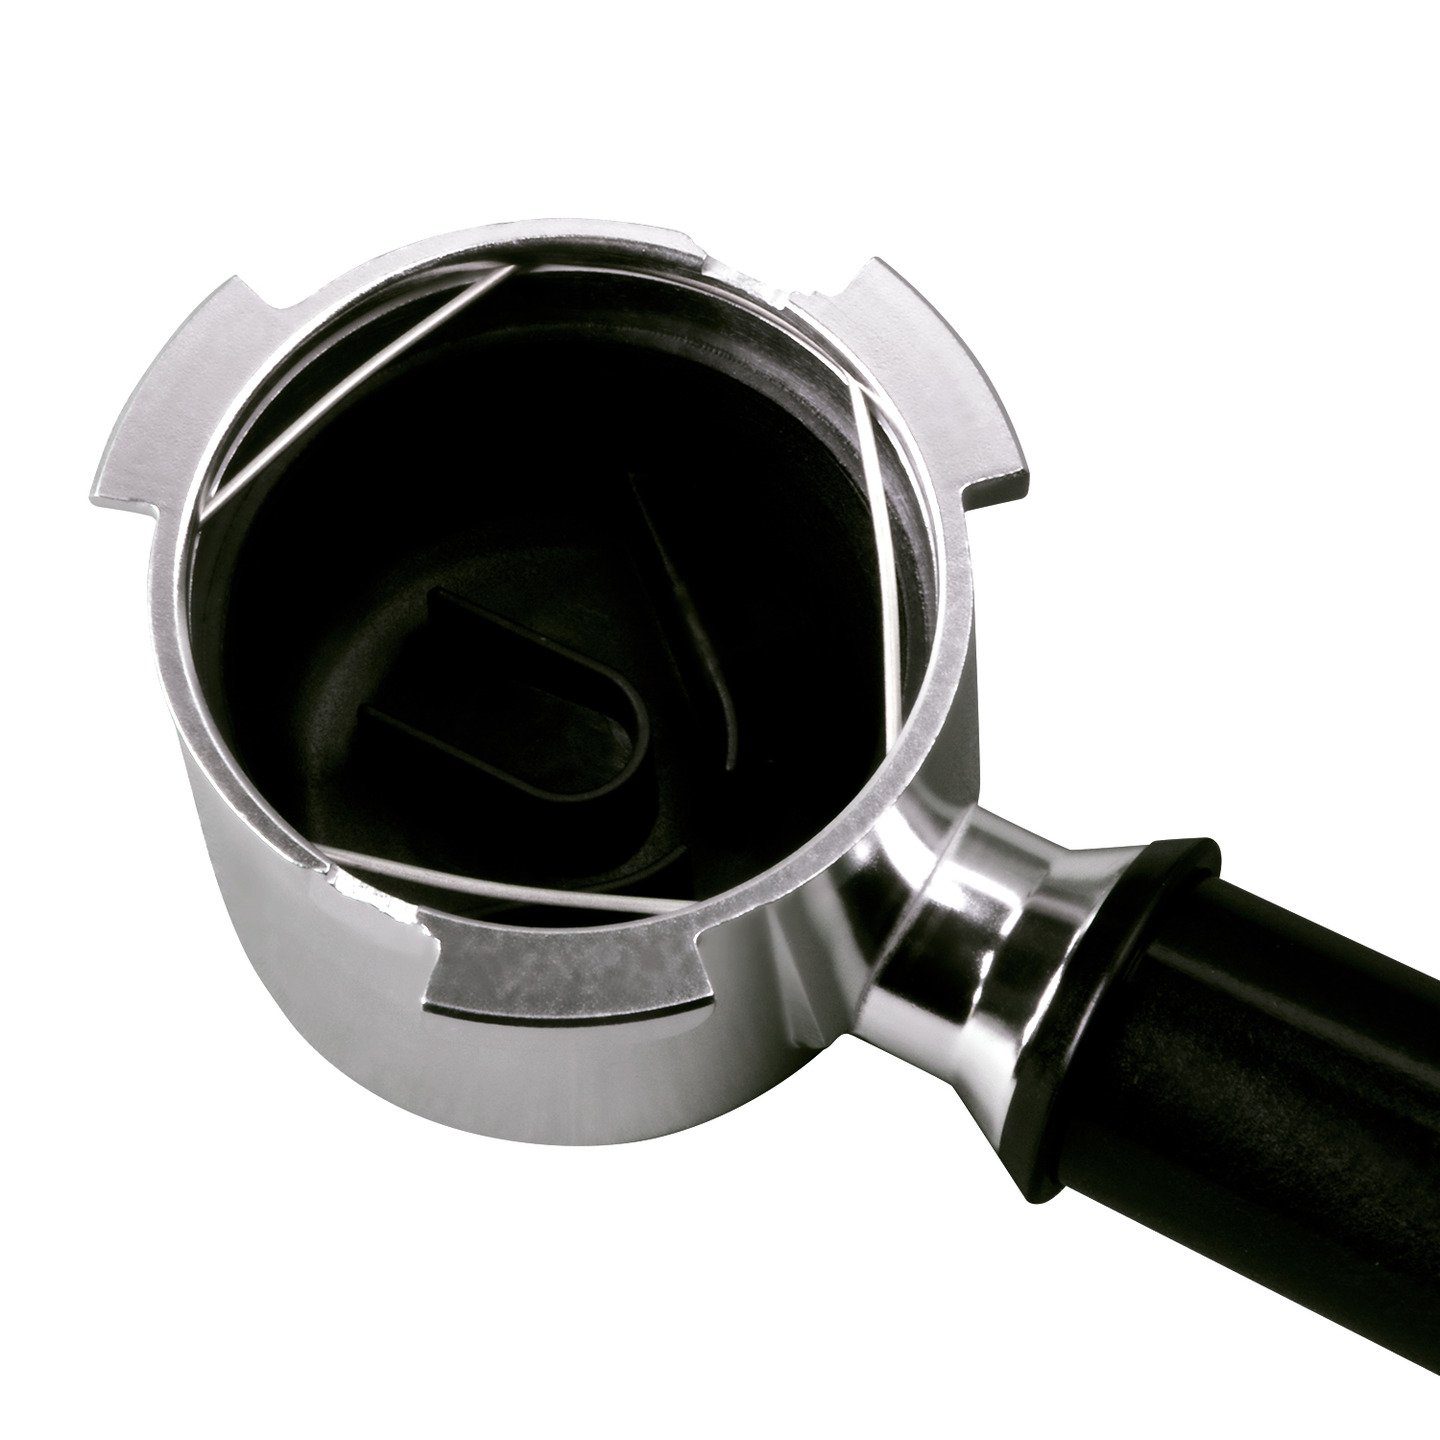 VIOKS Handfilter für Zubehör für Siebträger DeLonghi 5513200369 mit Kaffeemaschine, Siebeinsatz, Ersatz Espressomaschine